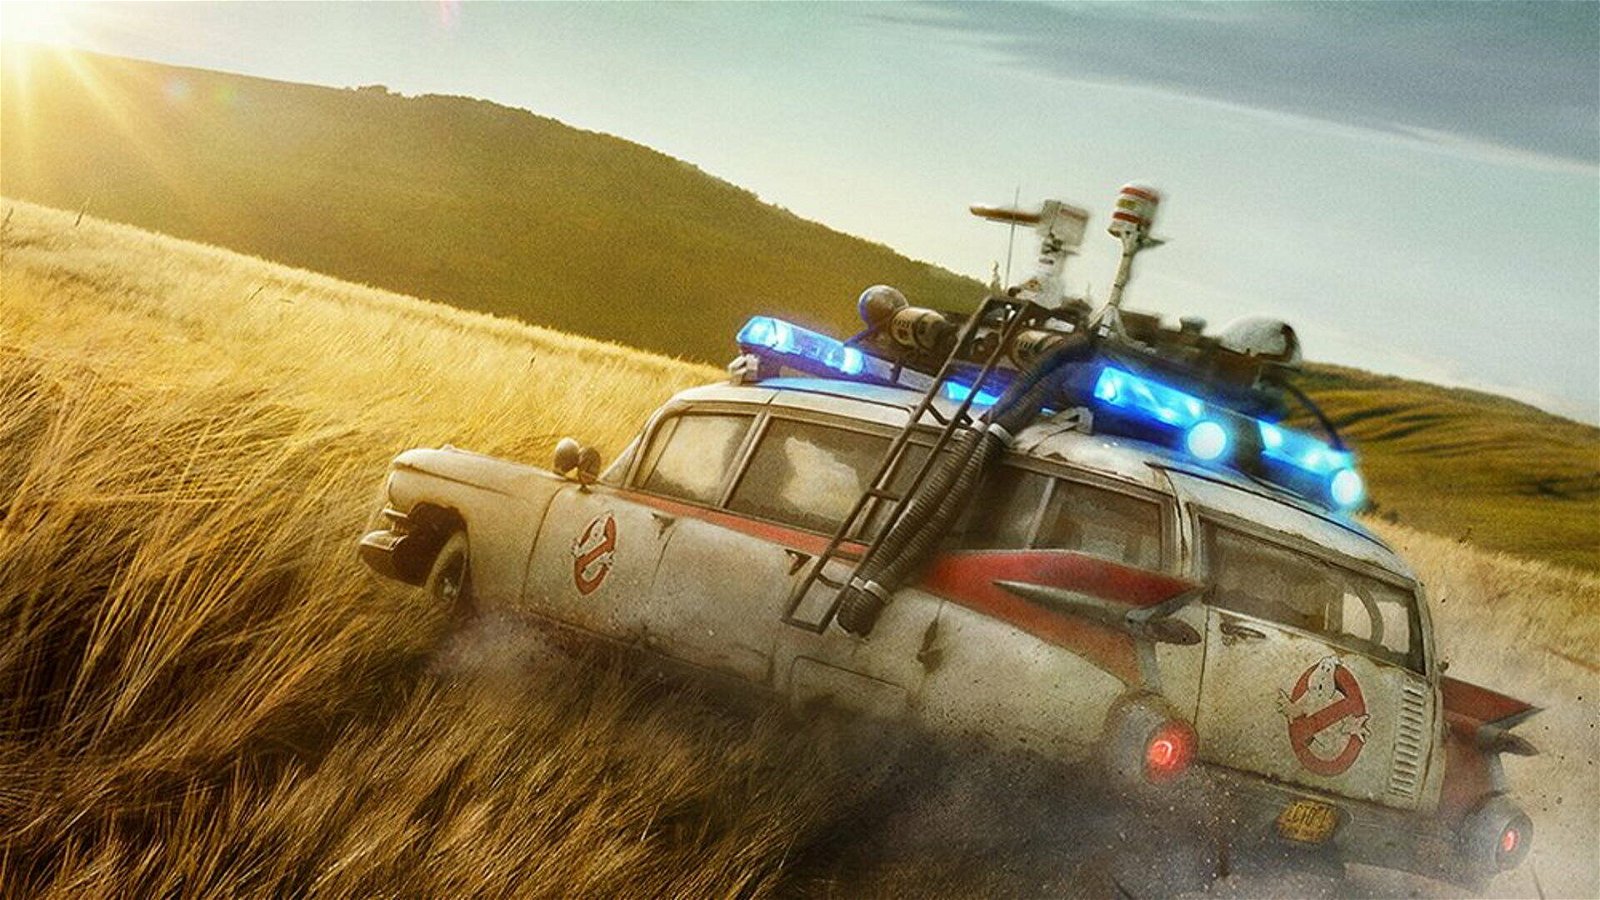 Immagine di Ghostbusters: Legacy, la Ecto-1 si aggiorna nel nuovo film